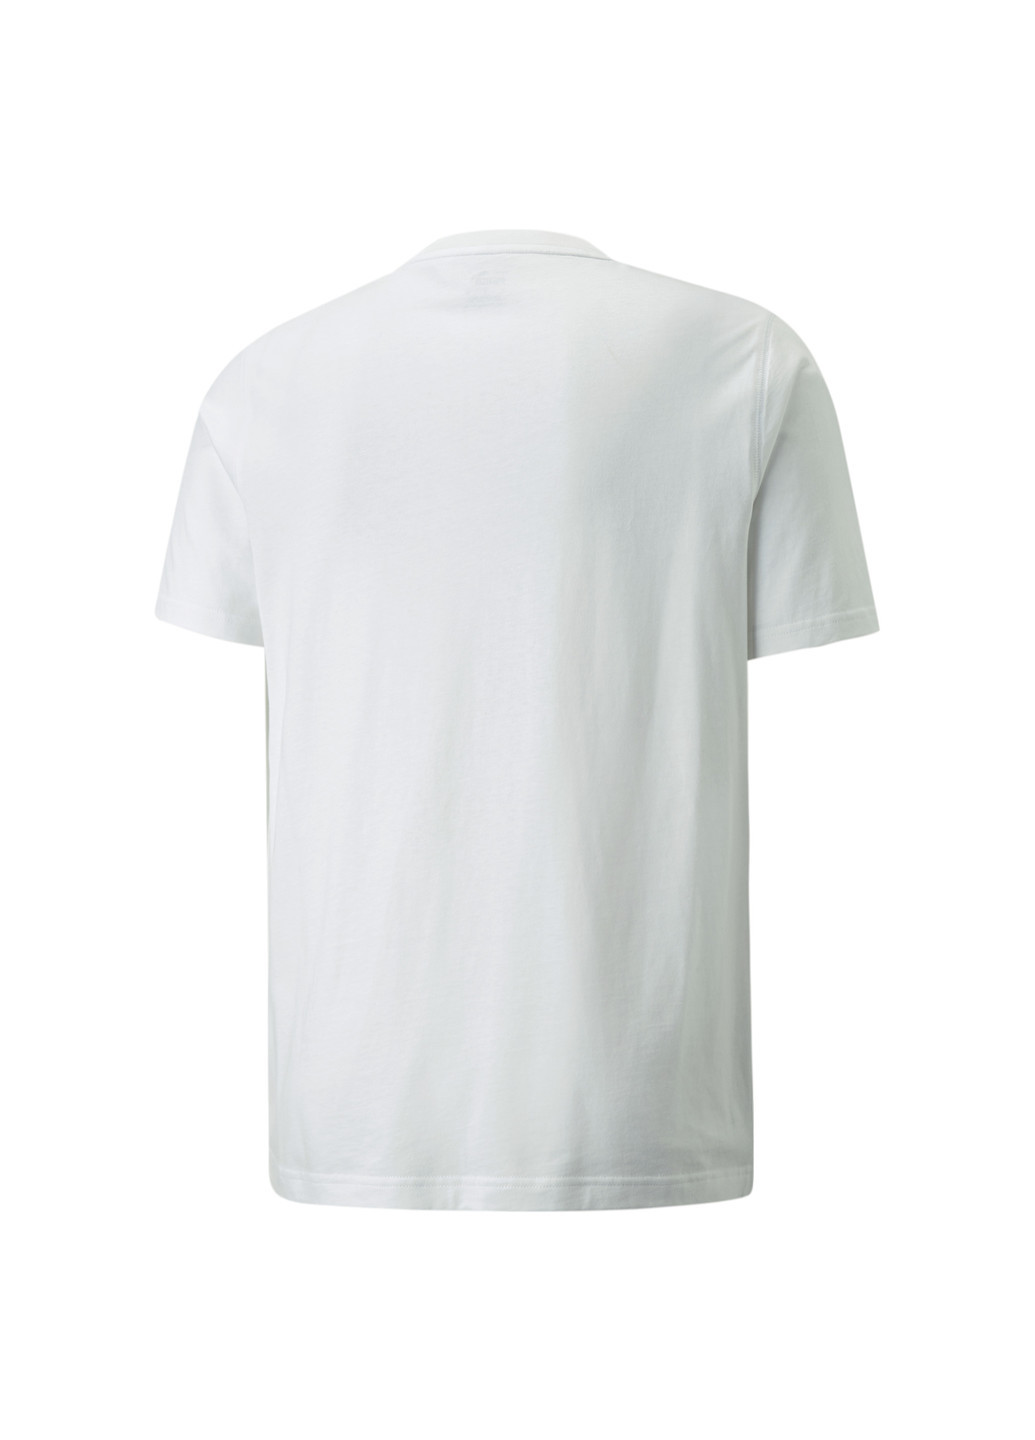 Біла демісезонна футболка modern basics men's tee Puma